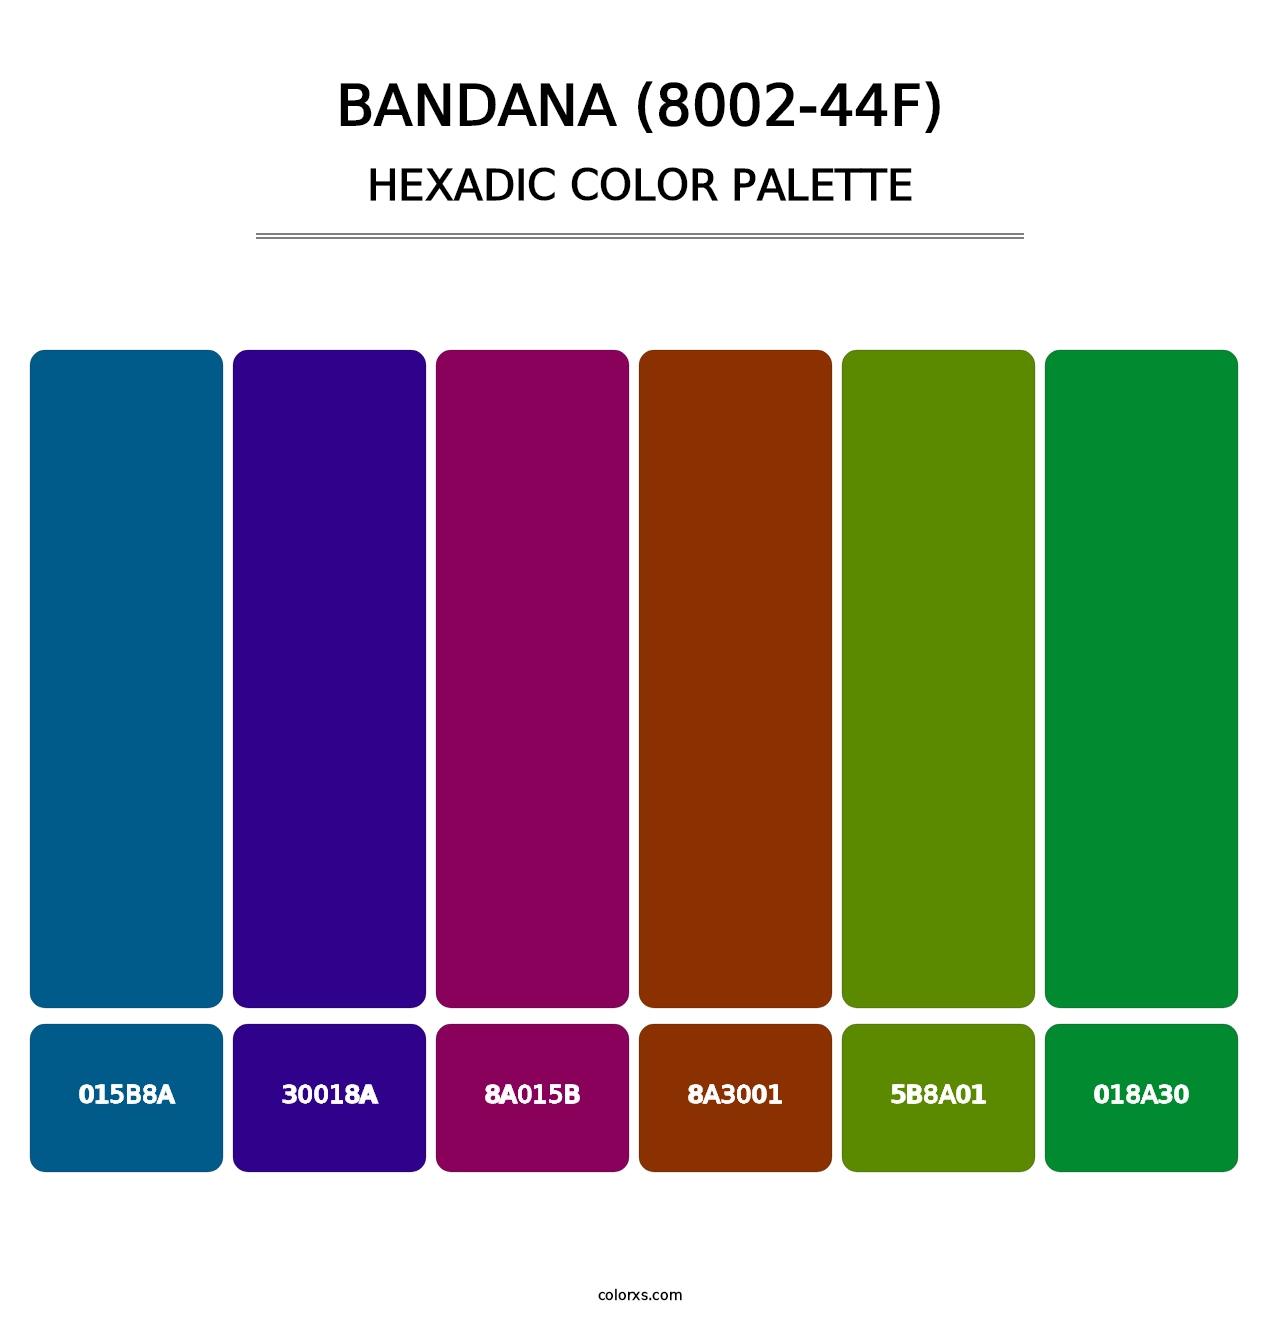 Bandana (8002-44F) - Hexadic Color Palette